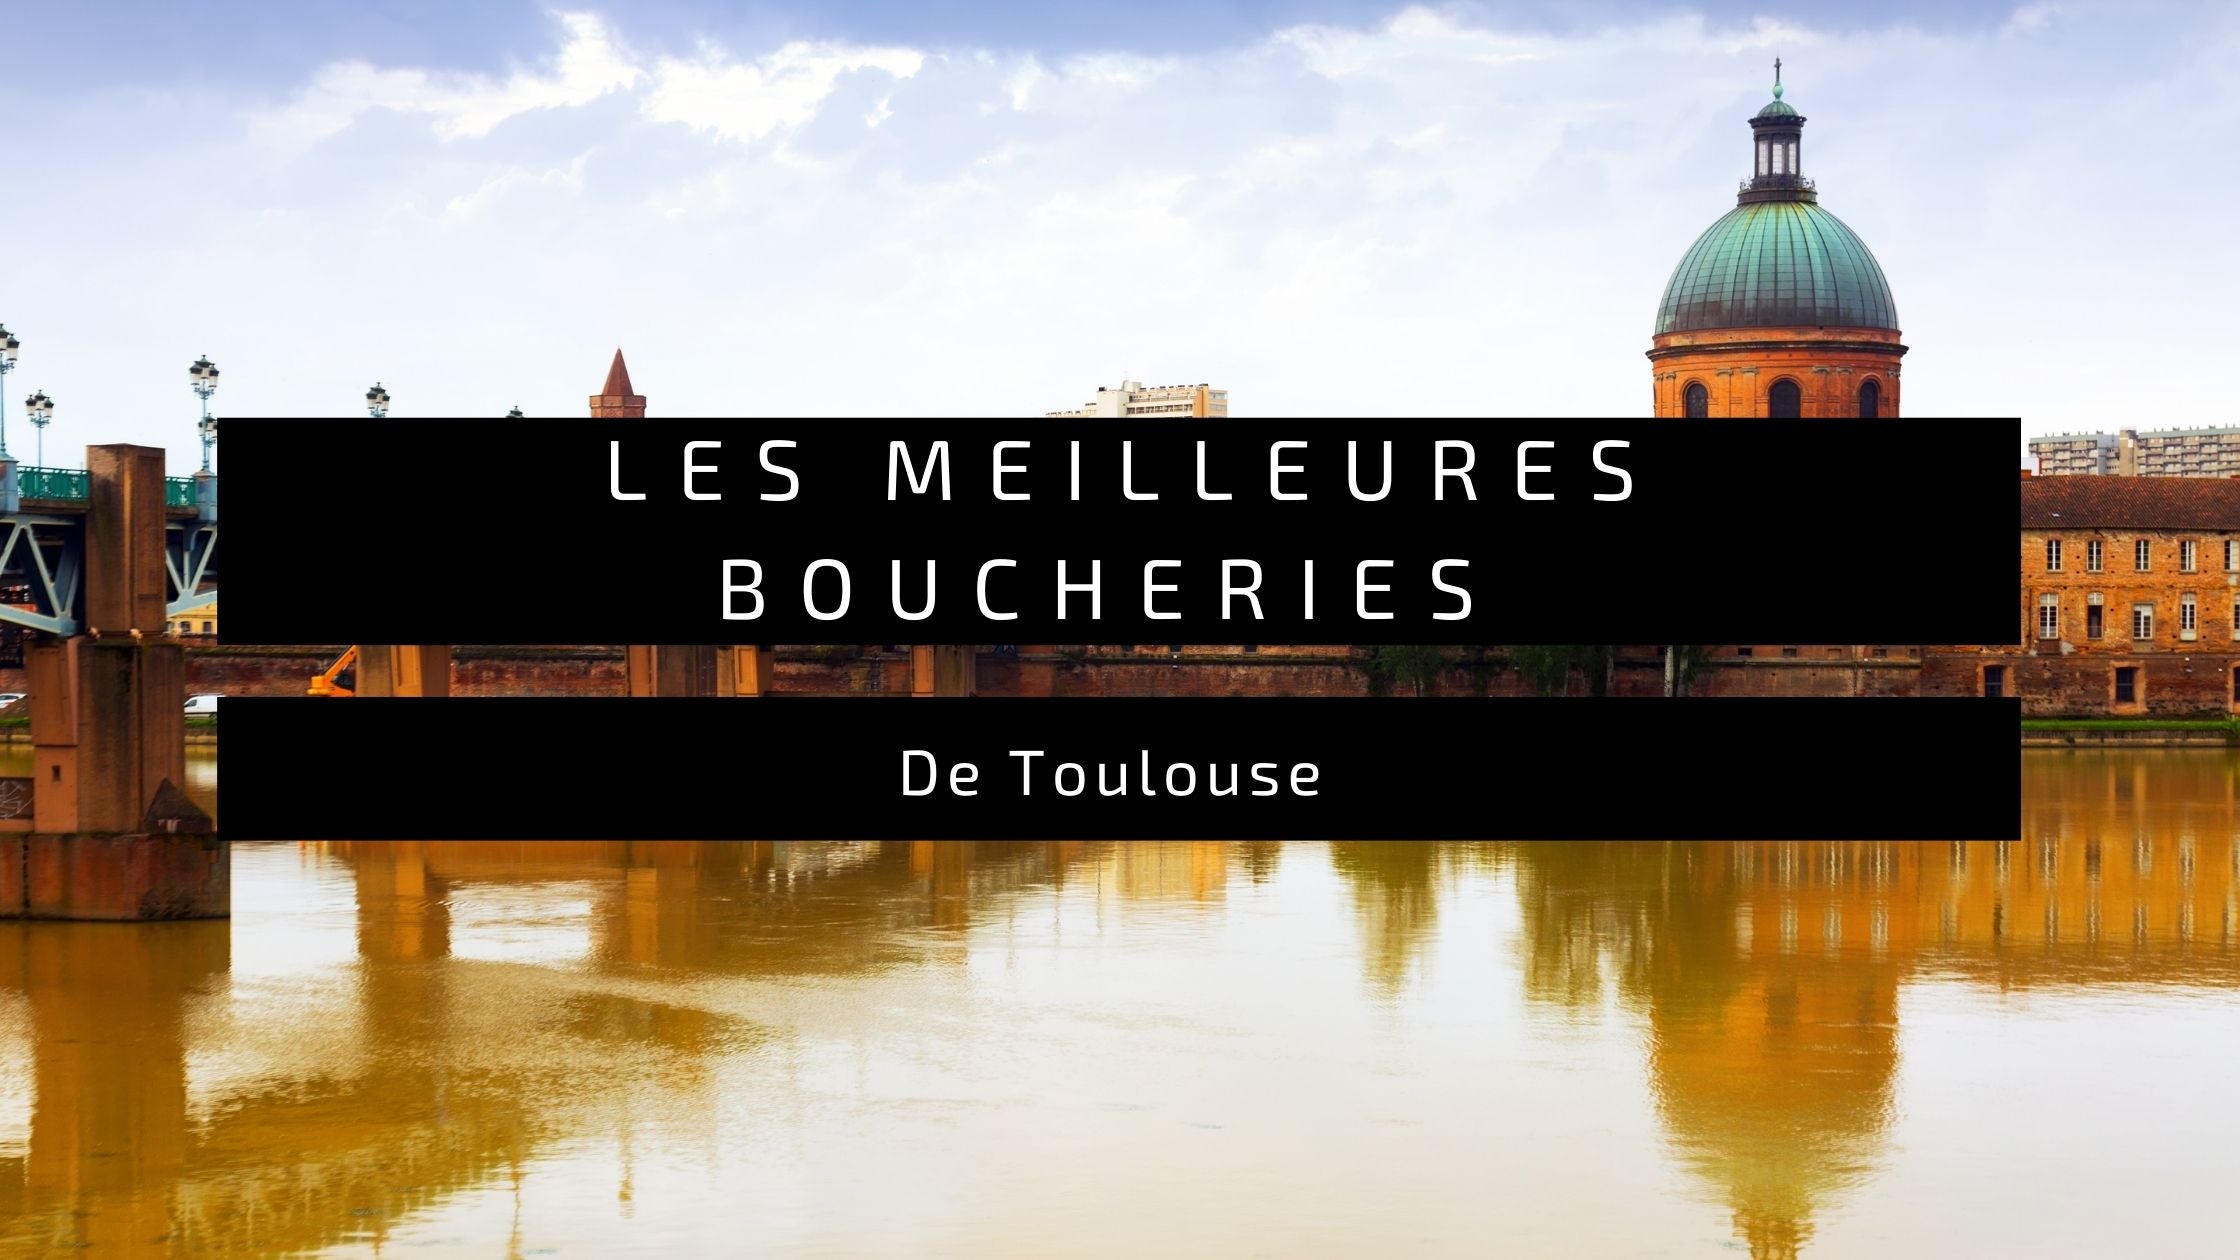 Les Meilleures Boucheries de Toulouse